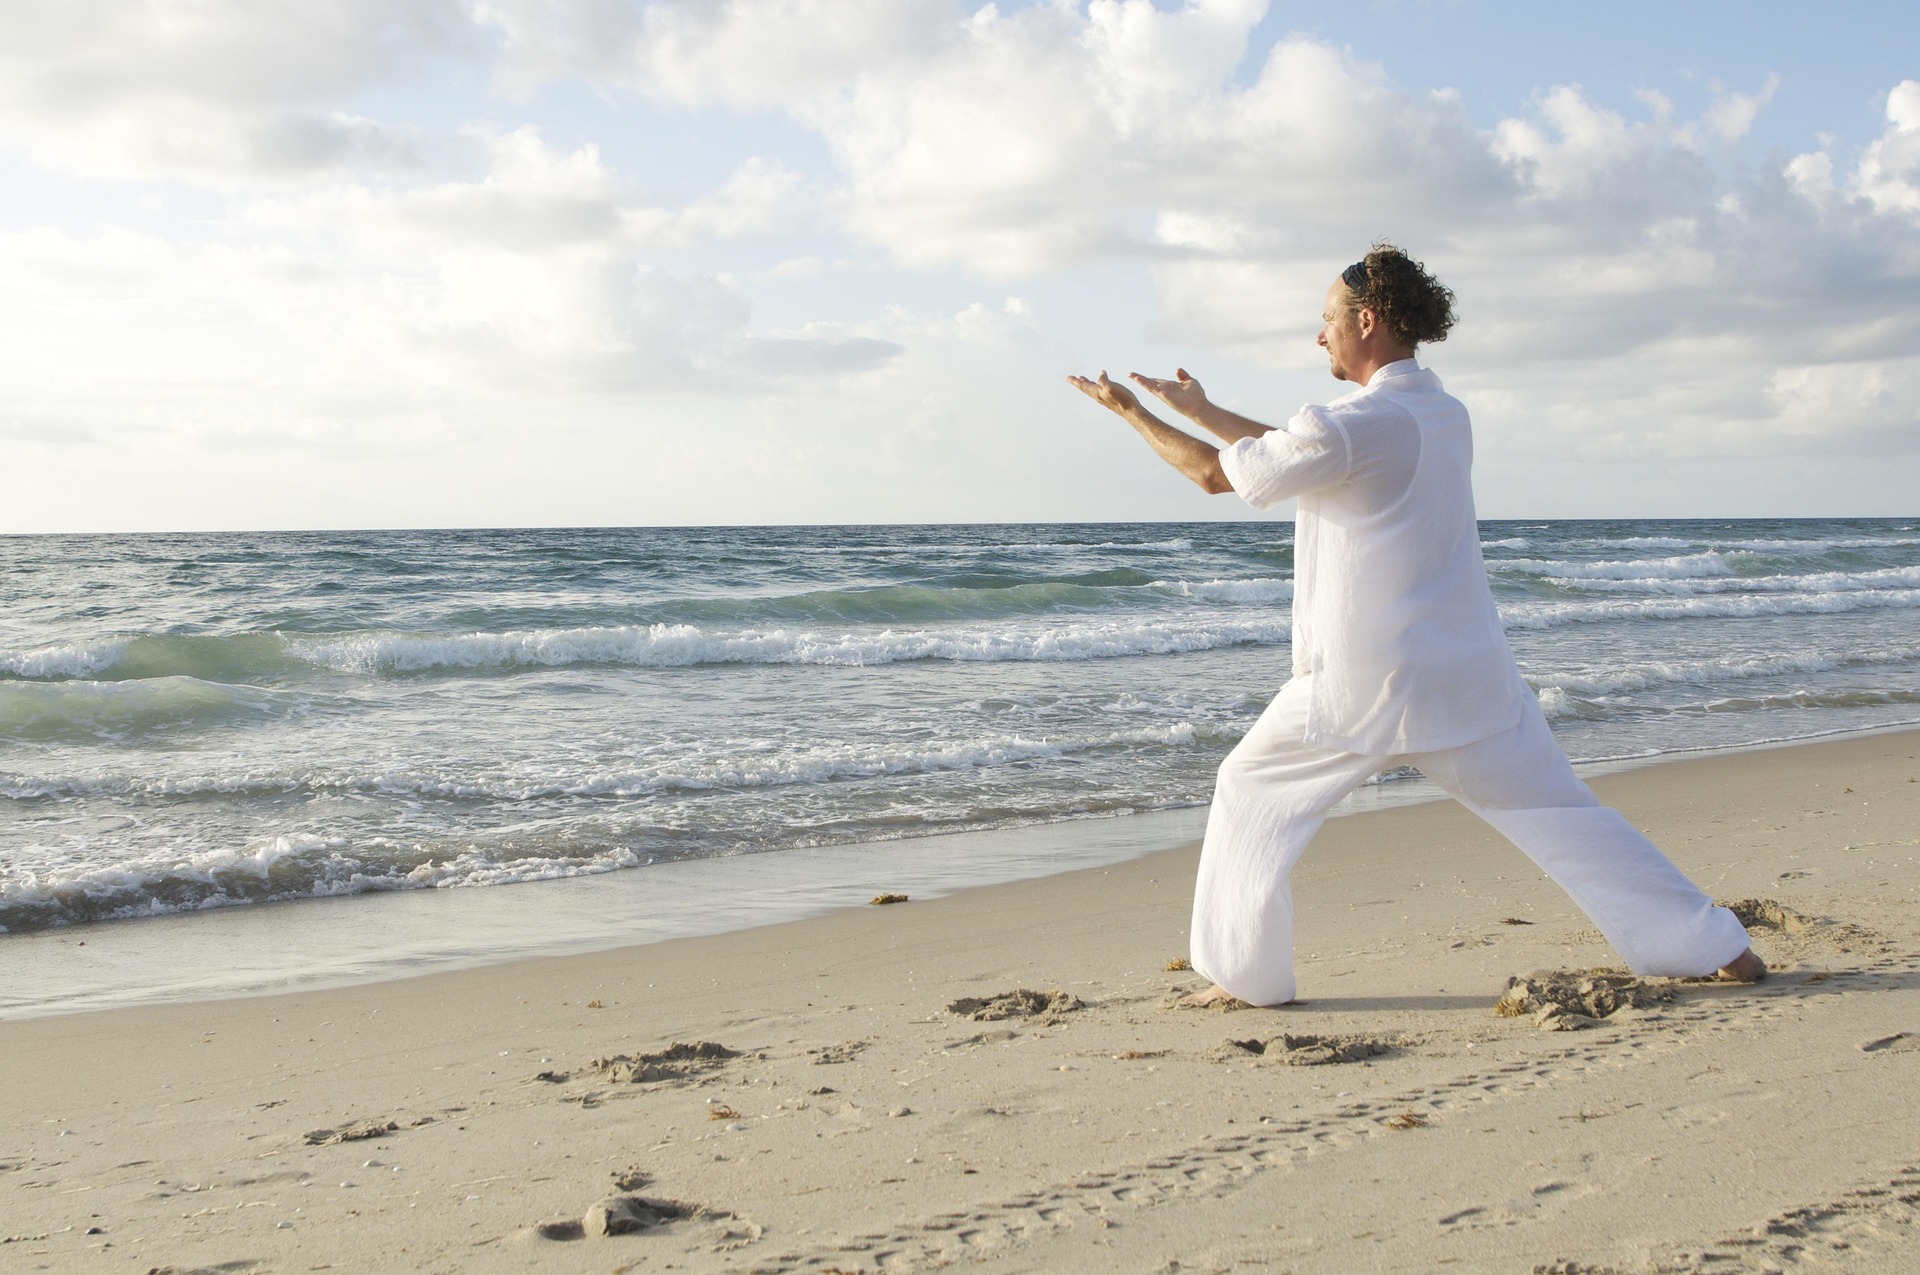 Bilden visar en person på en strand som utövar tai chi eller yoga.